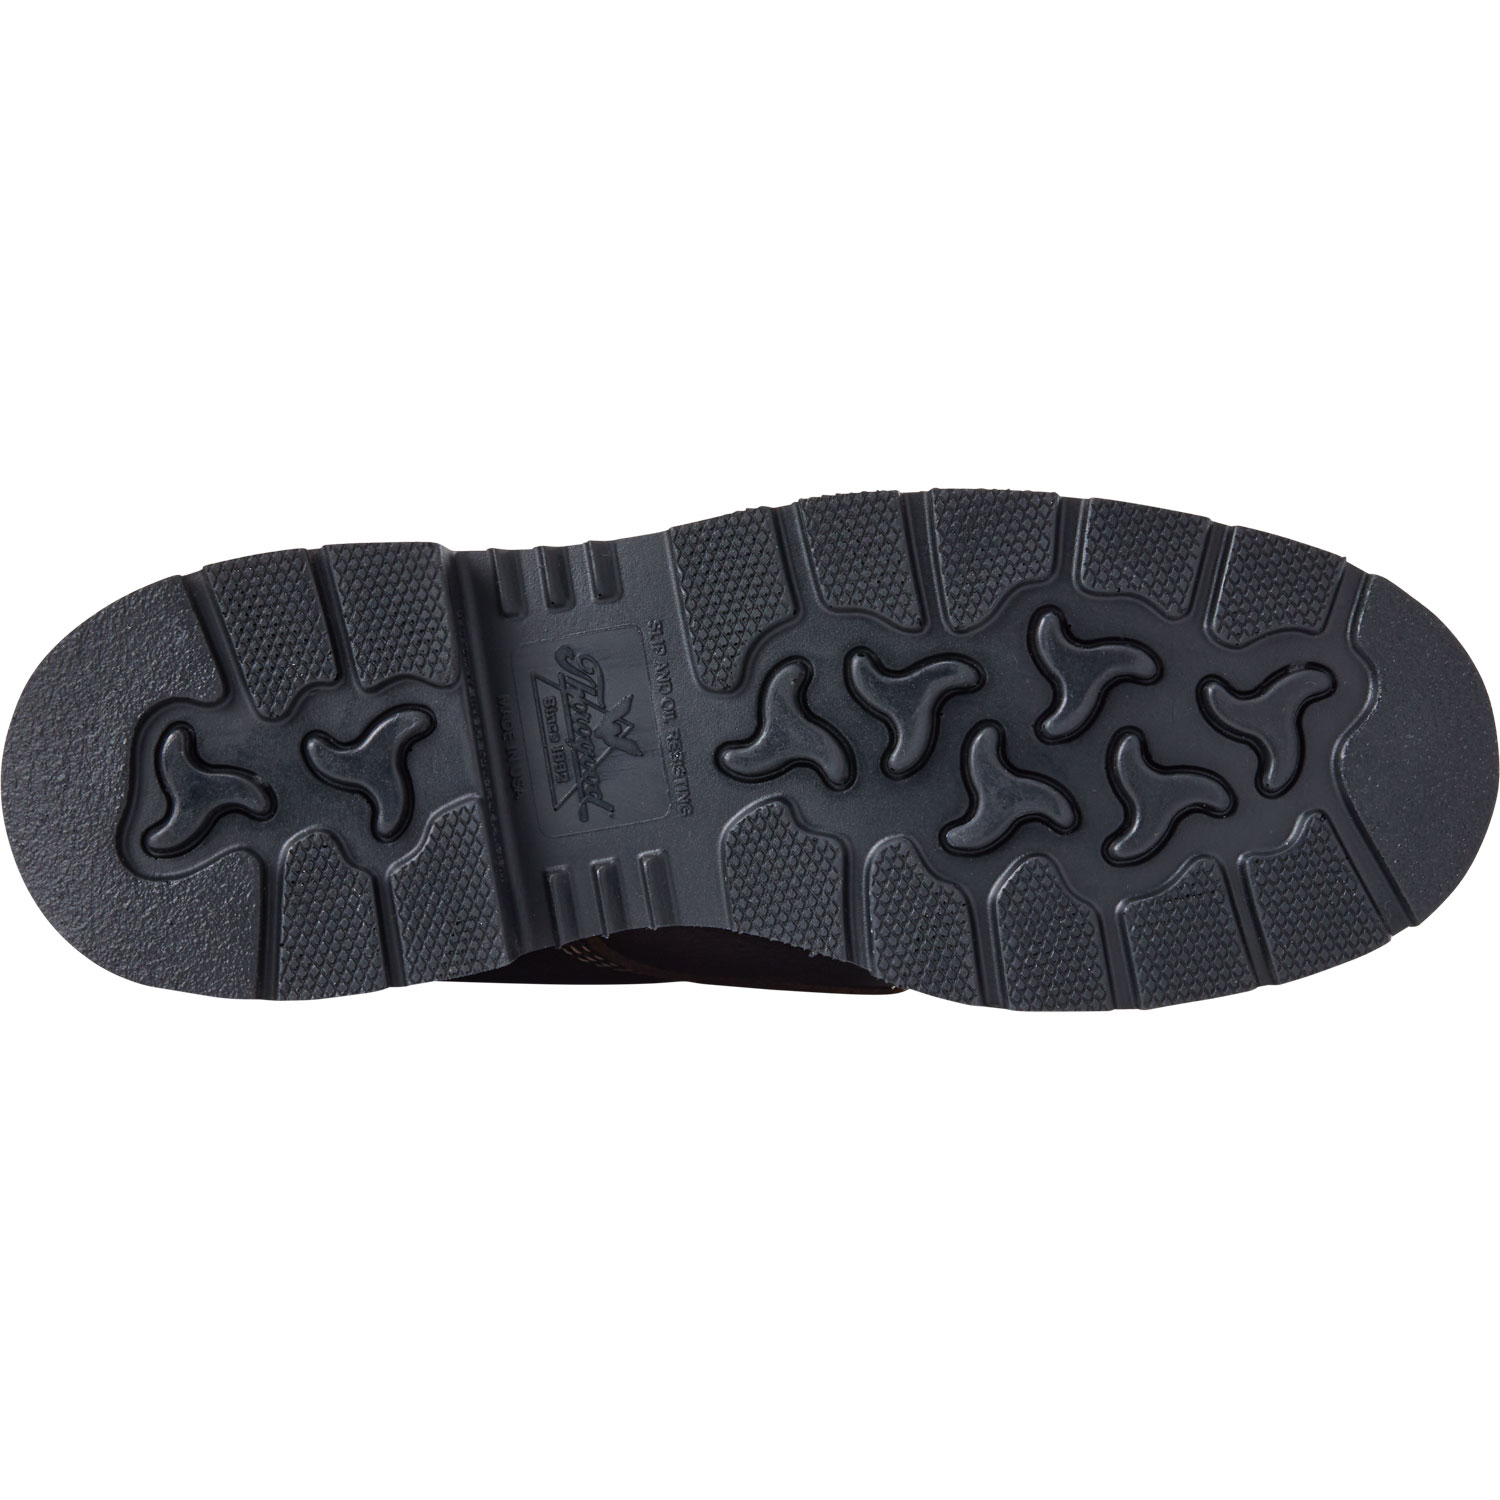 Men's Thorogood 6" Waterproof Moc Toe Boots